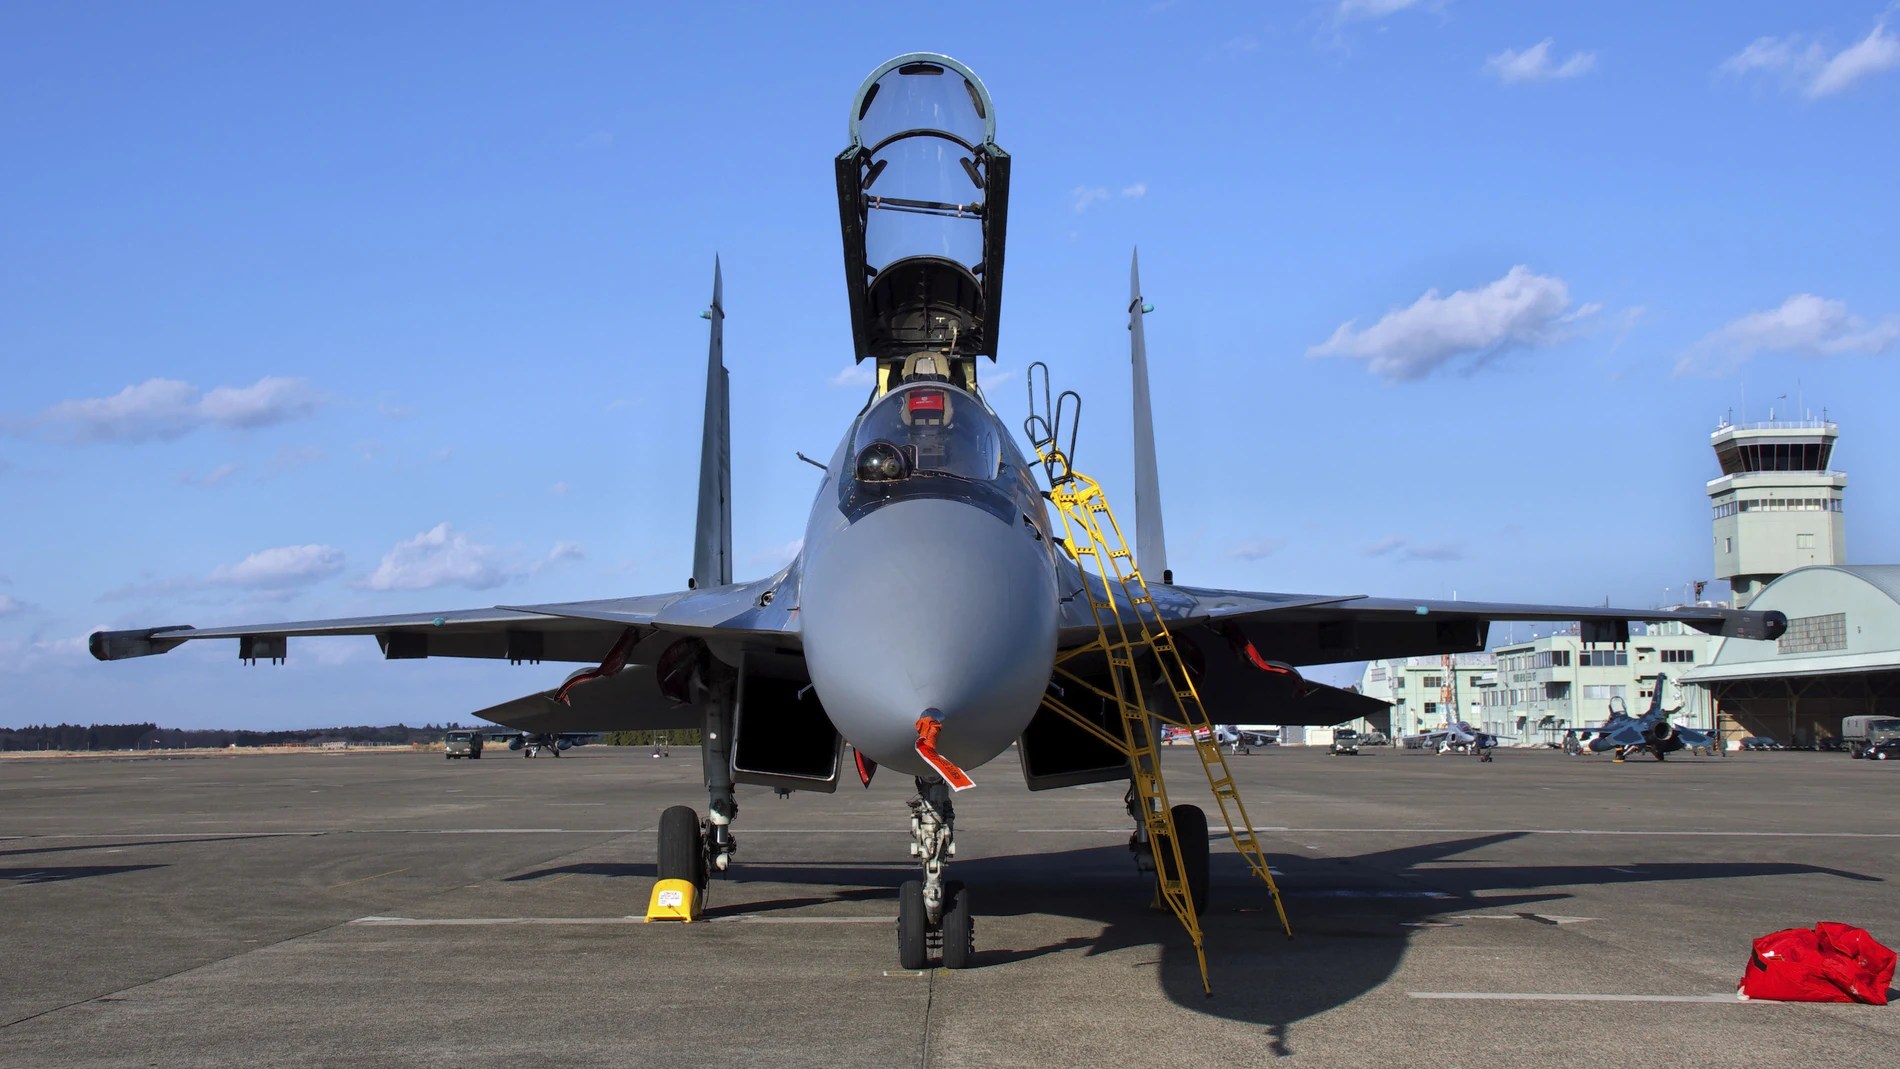 ¿La Fuerza Aérea rusa entró en crisis? Un total de 10 cazas fueron derribados en 10 días